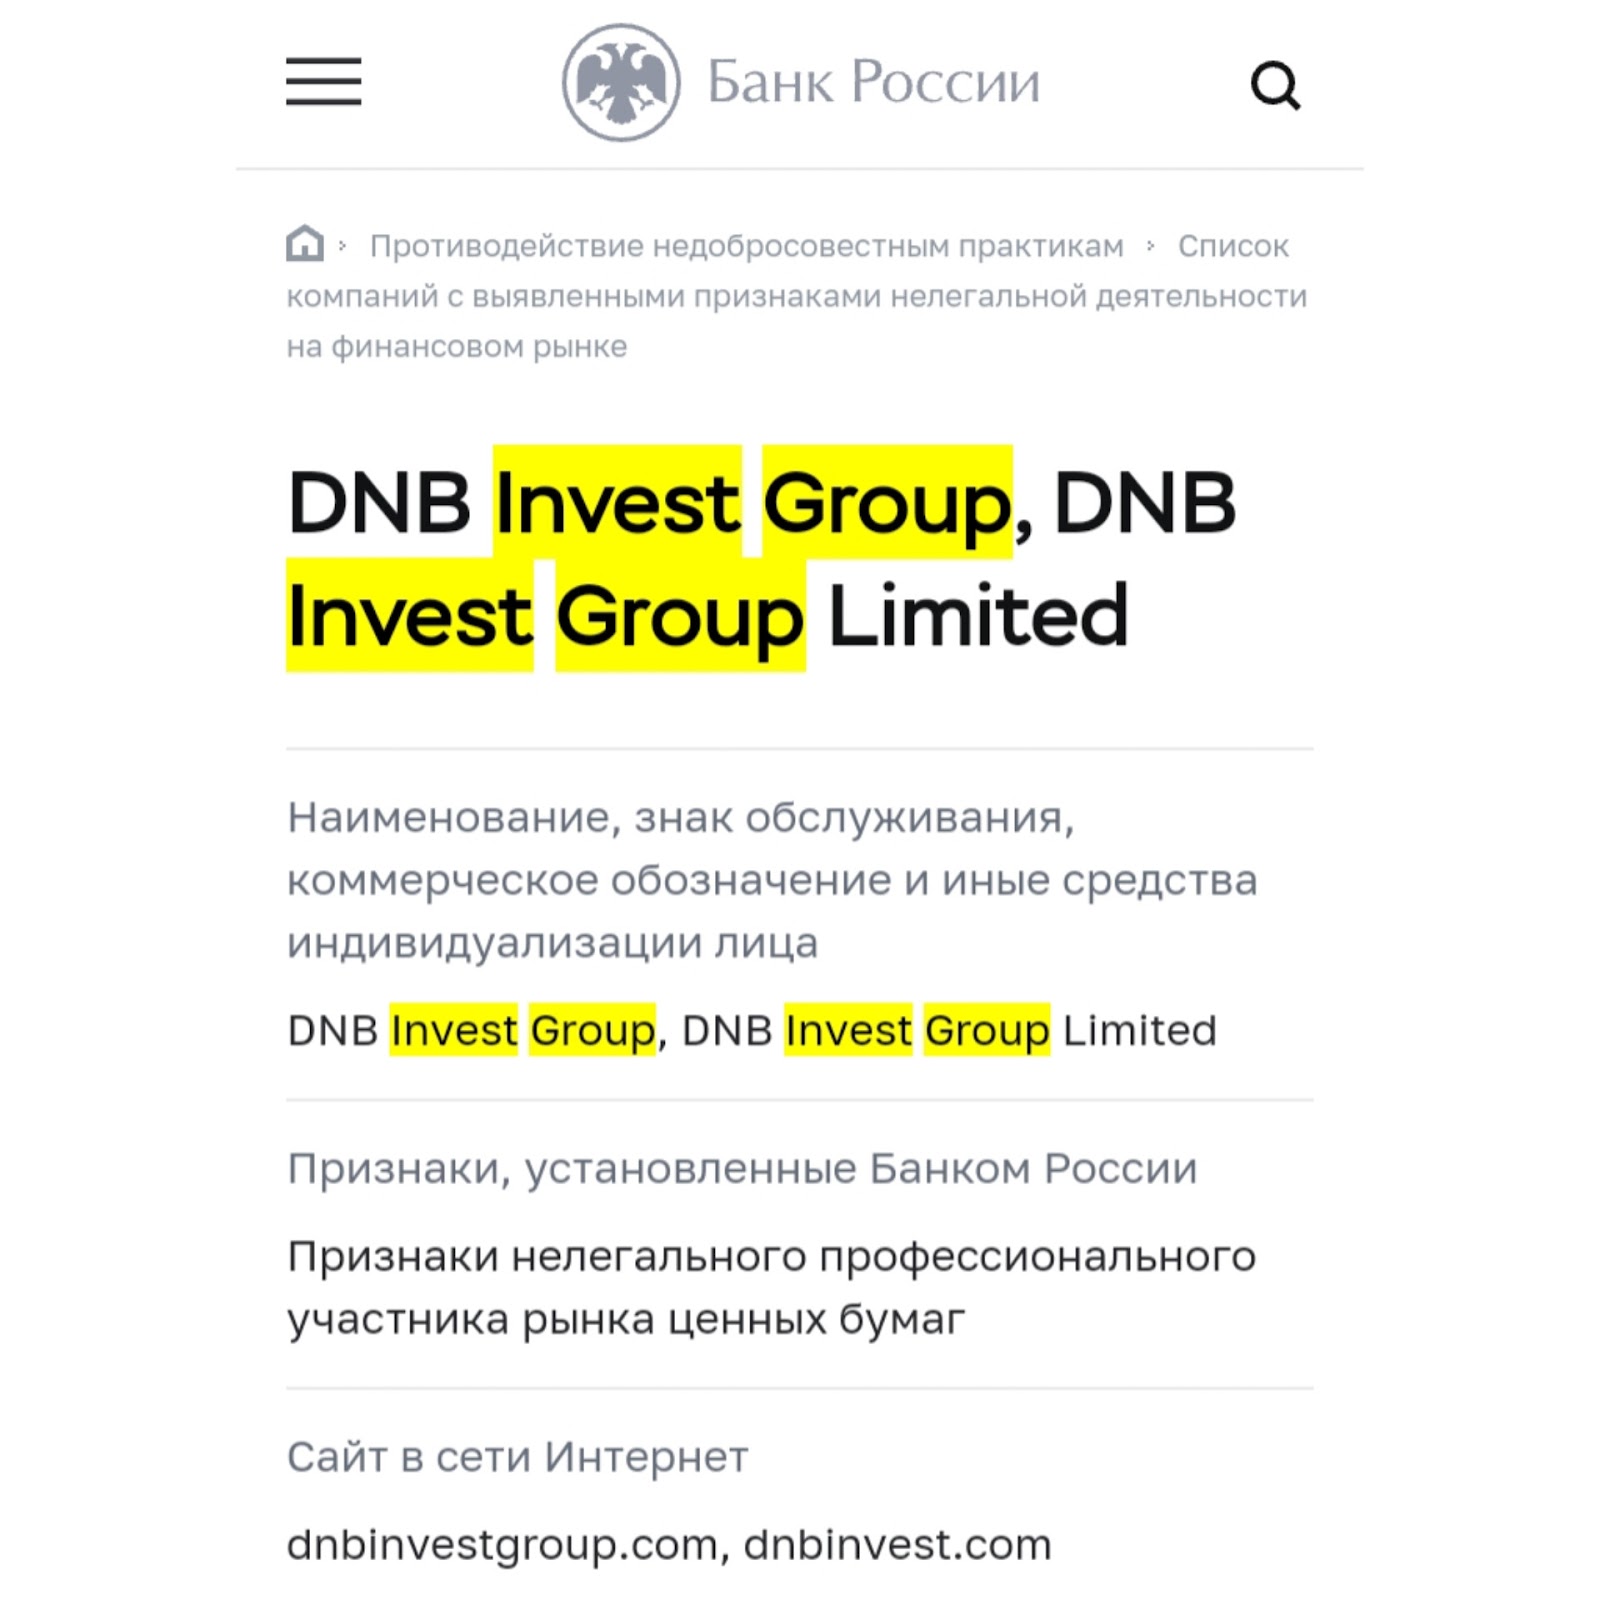 dnb invest group отзывы